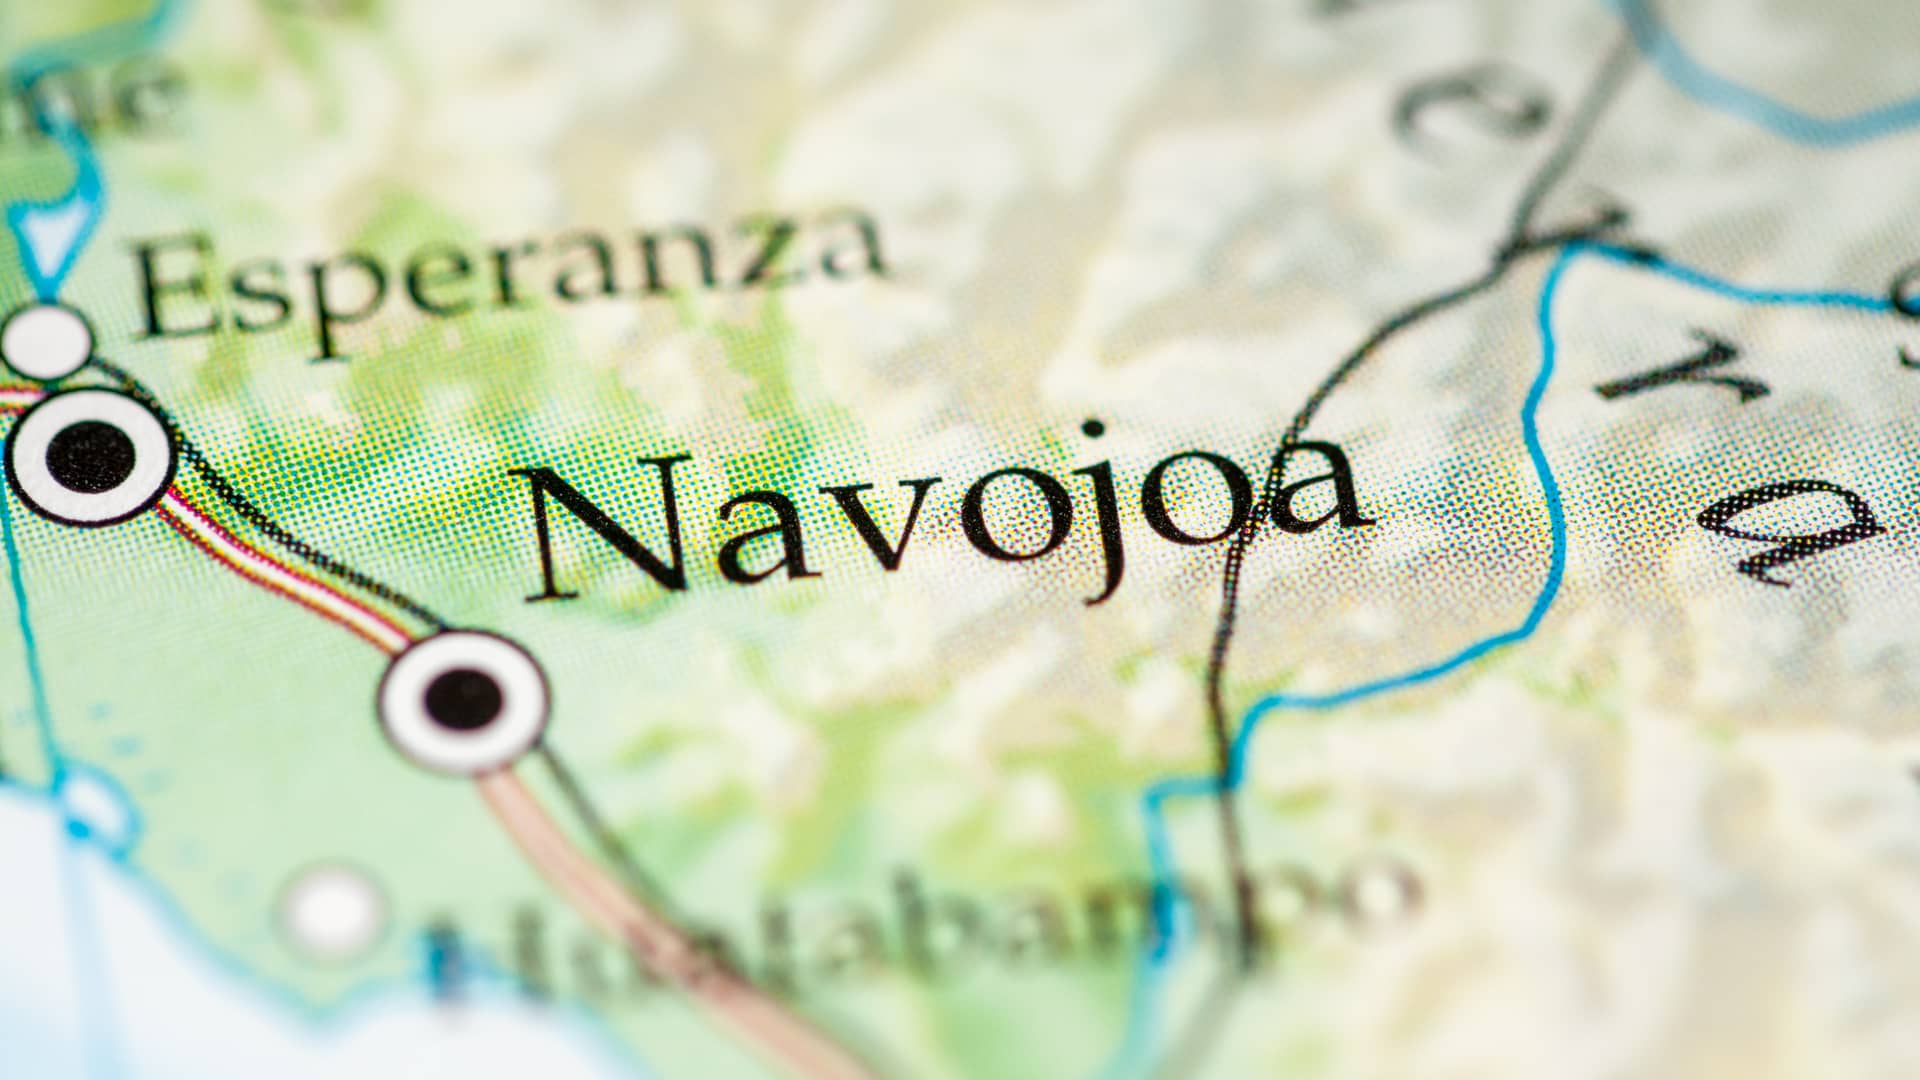 ciudad de navojoa localizada en un mapa que es una localidad que dispone de sucursales de megacable